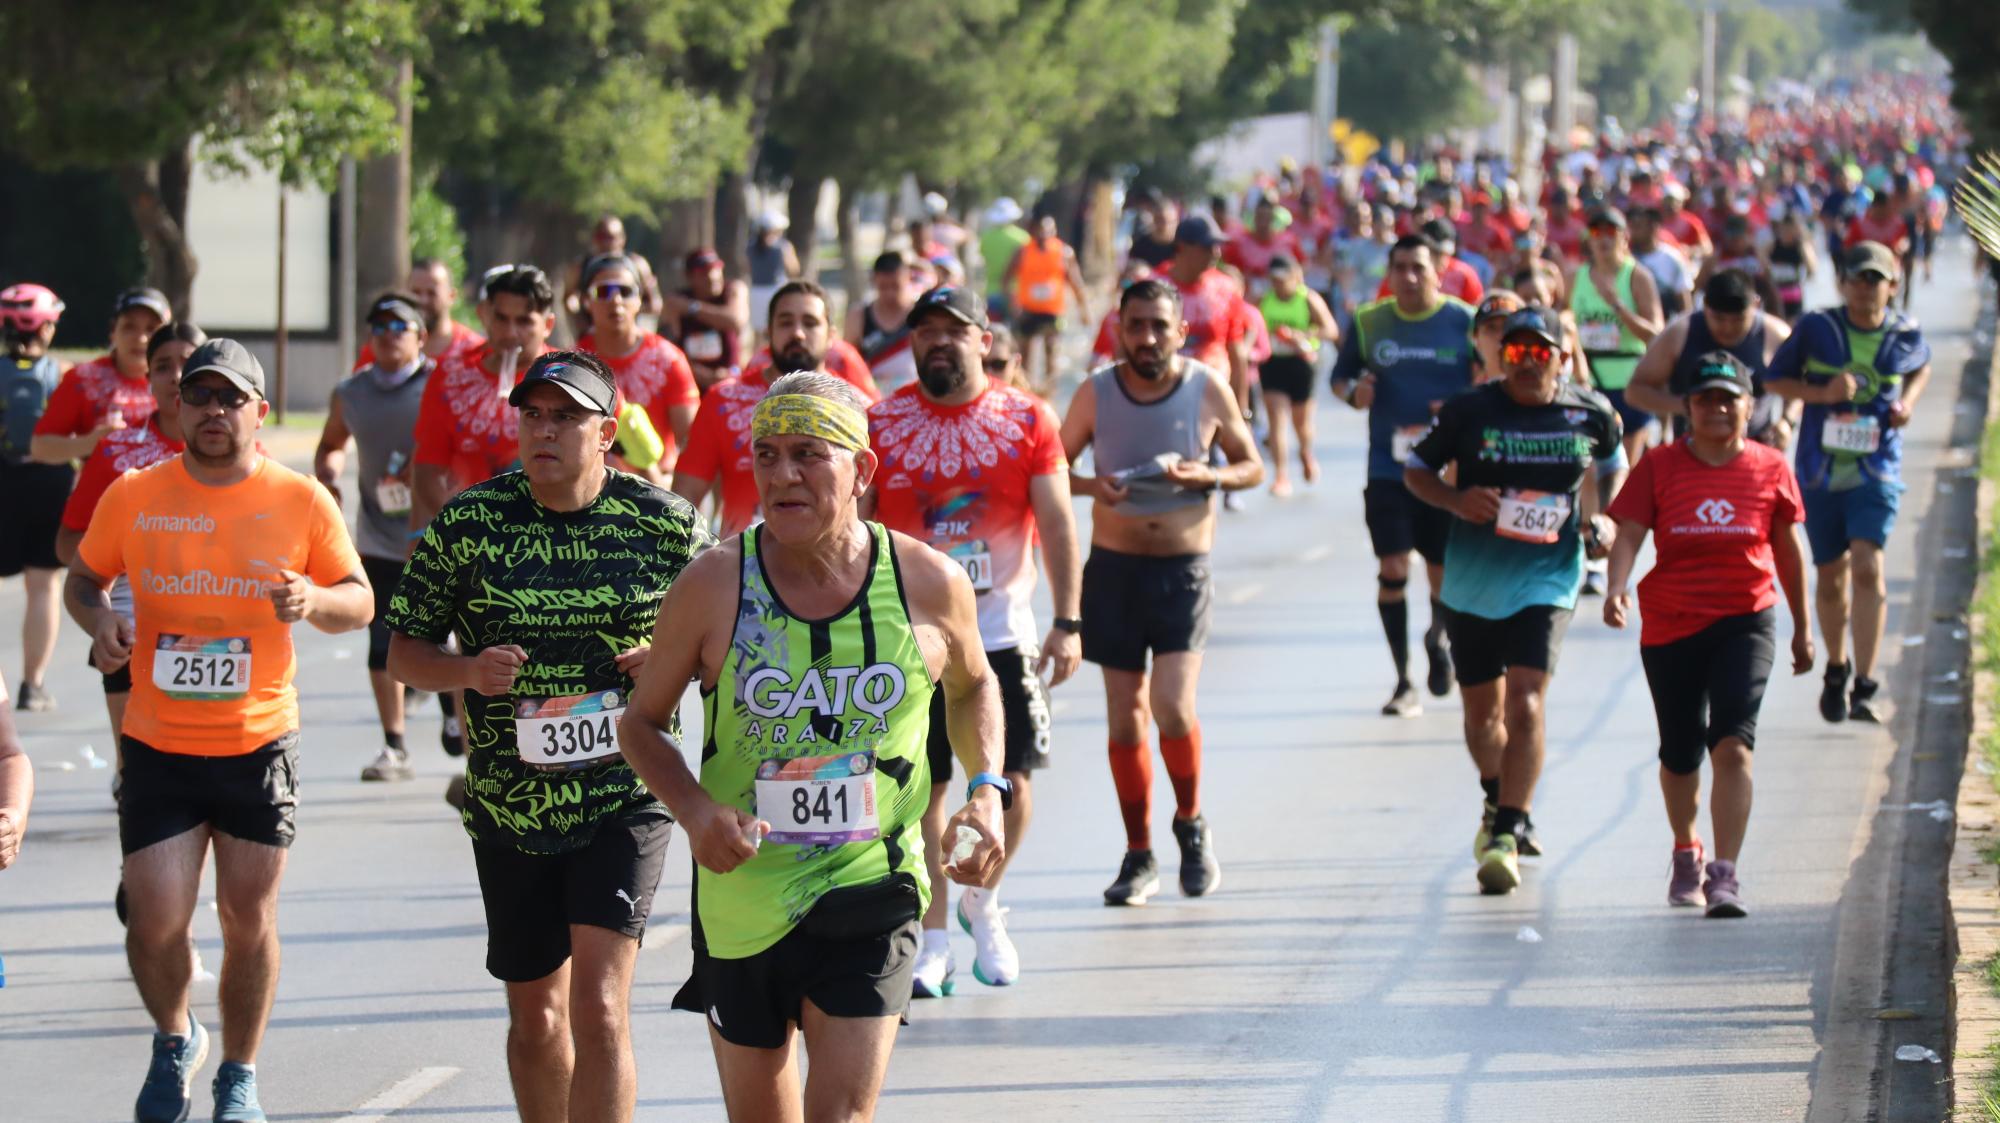 $!Los casi 6 mil corredores iniciaron a máxima velocidad en búsqueda de cumplir con sus objetivos.